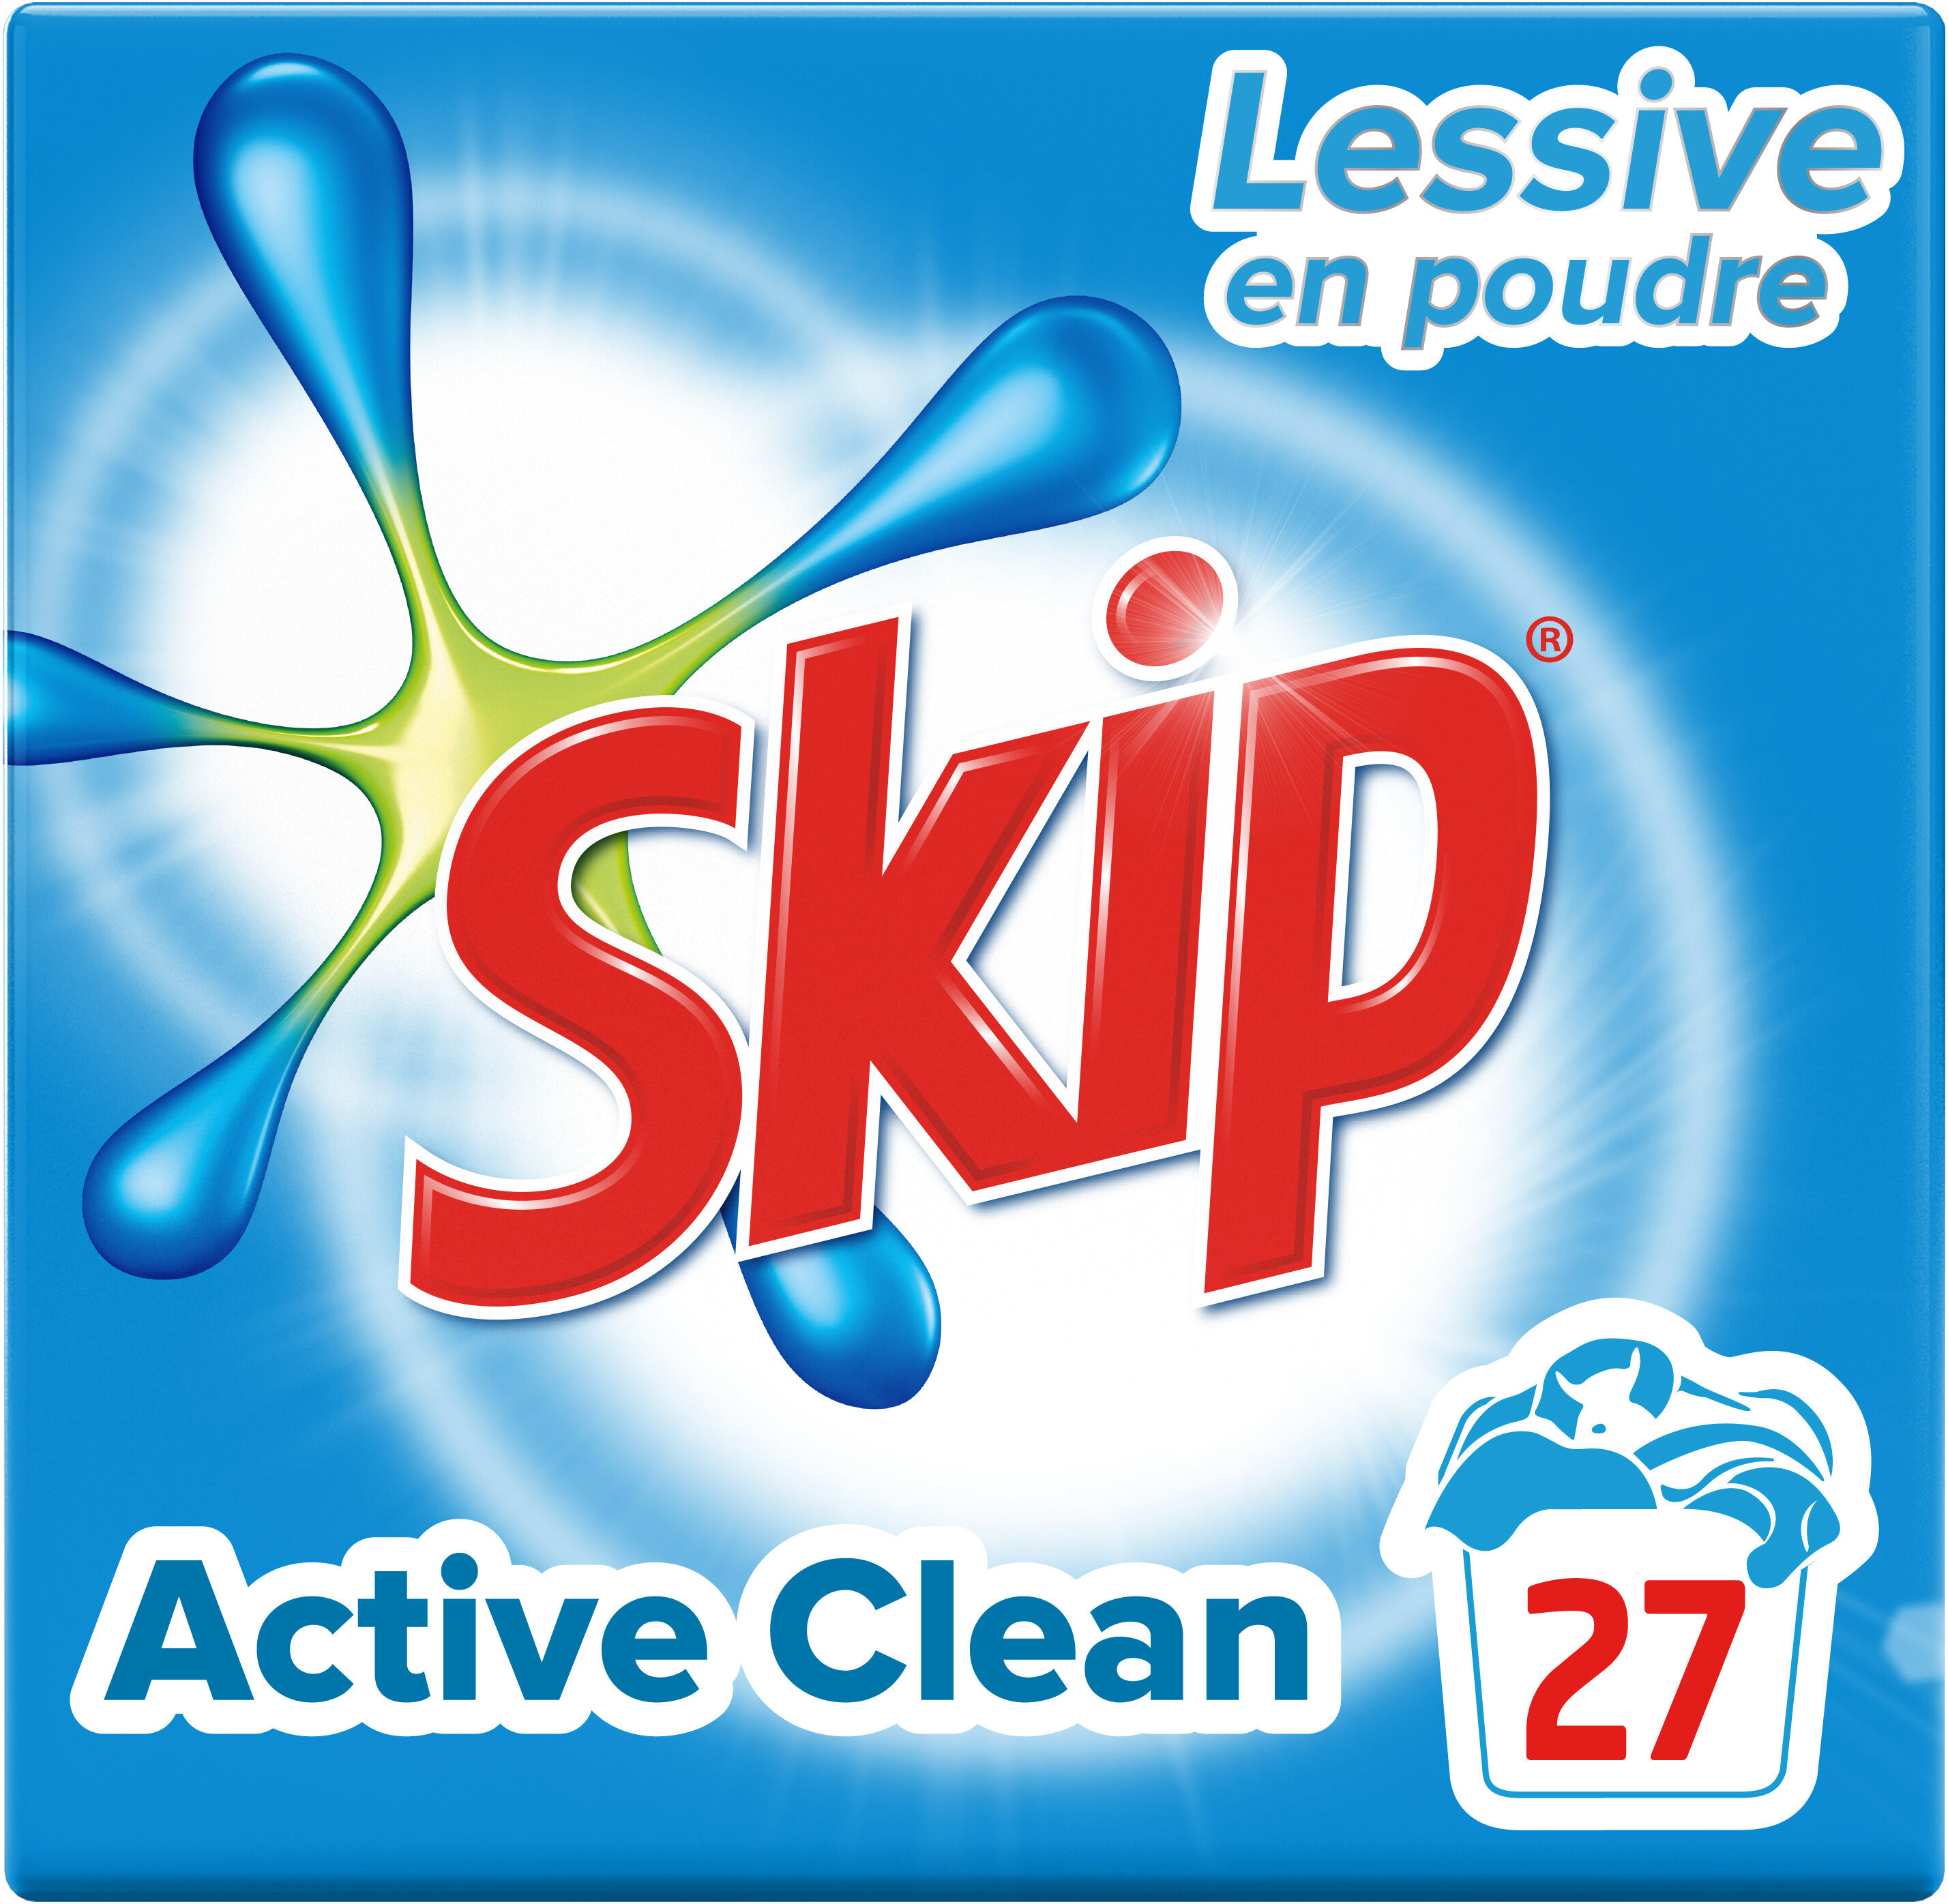 SKIP Lessive en Poudre Active Clean 27 Doses - Product - fr